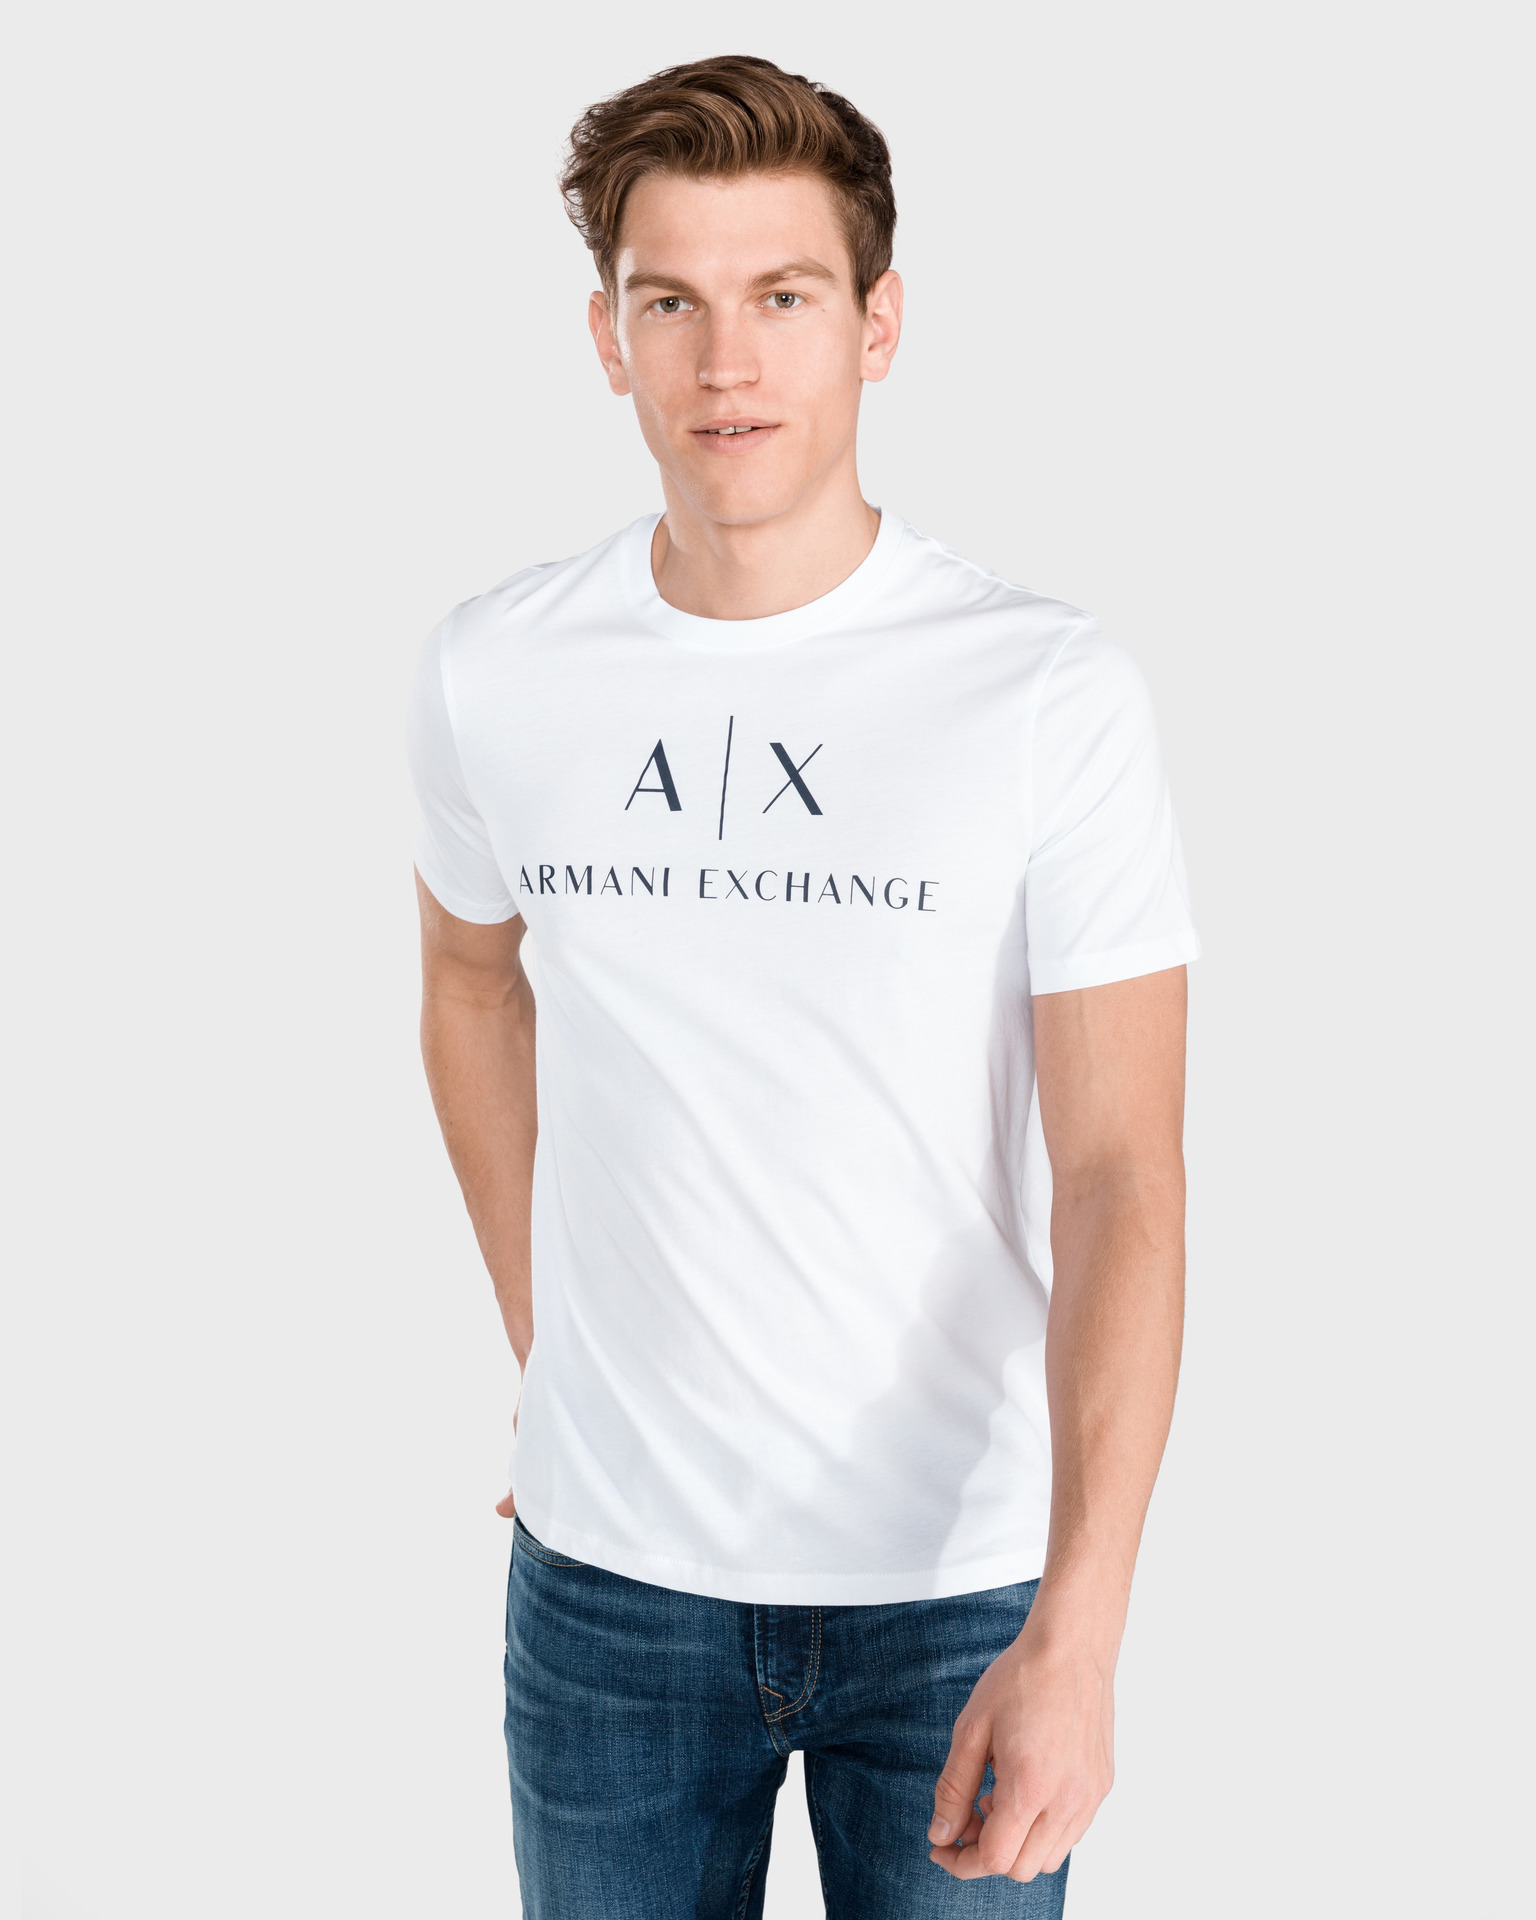 armani exchange t shirt india